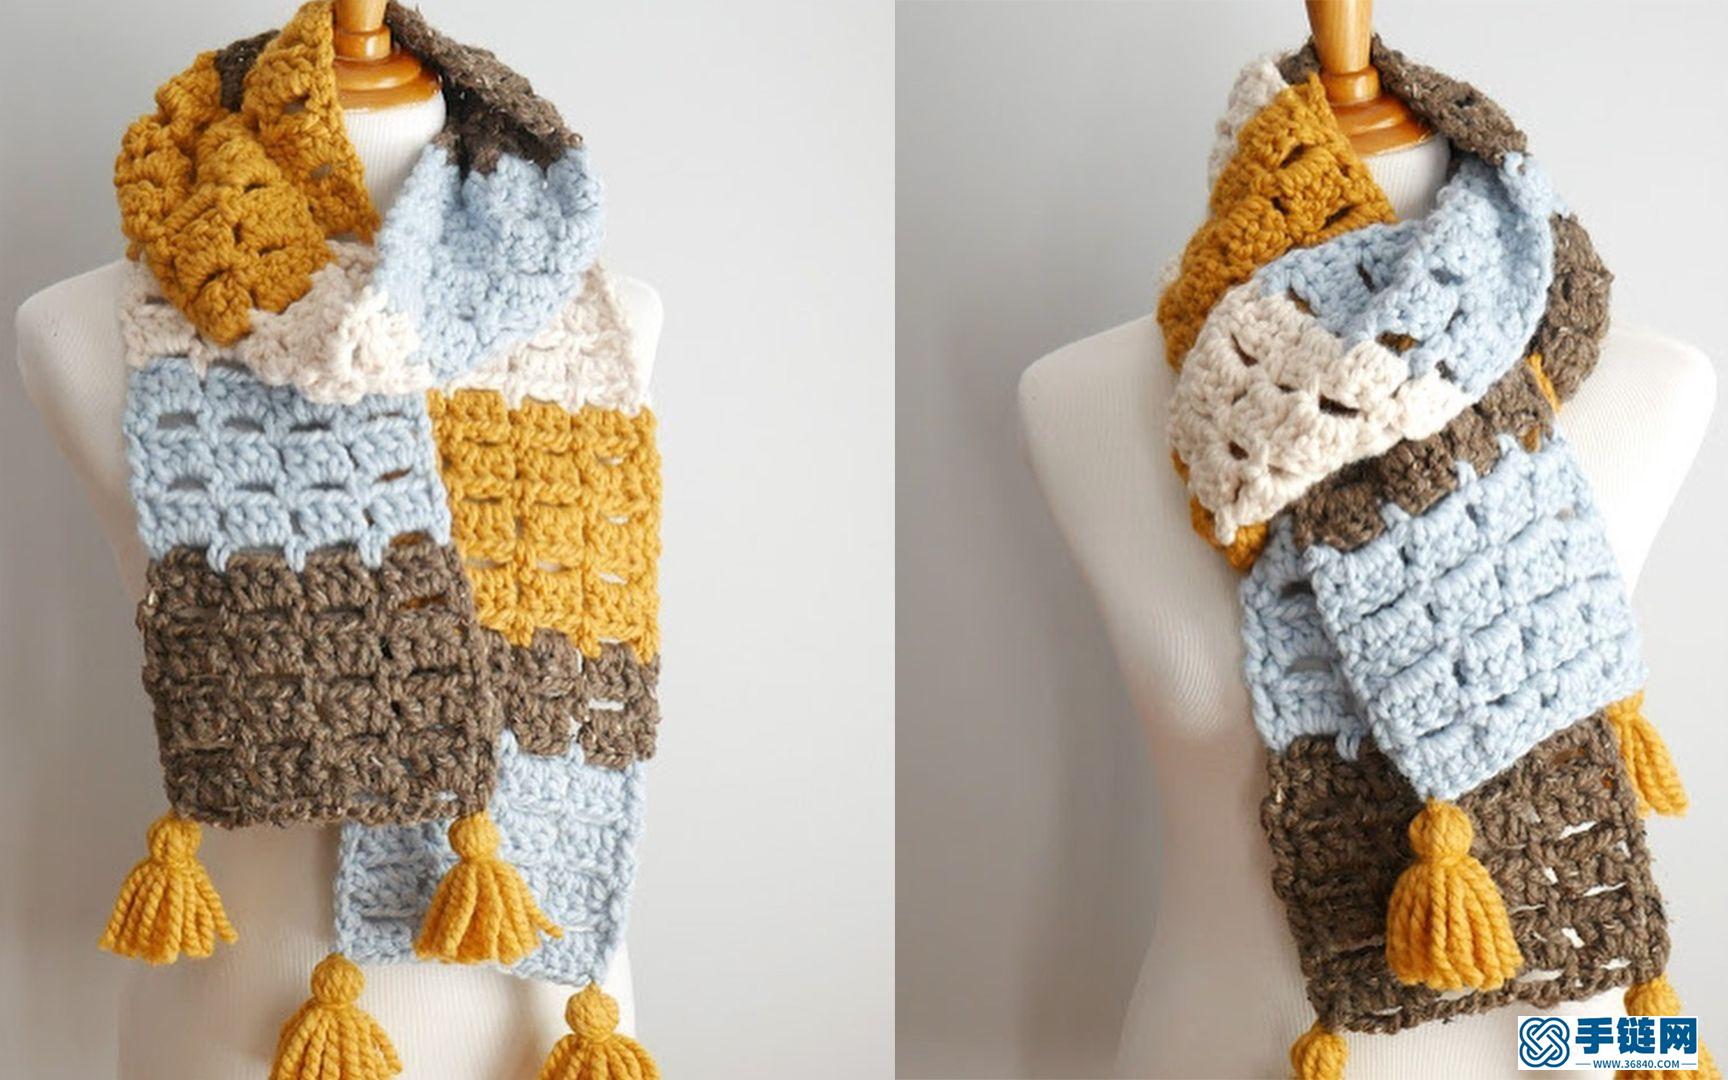  钩针编织拼色保暖长围巾，秋冬季节贴心的穿戴搭配